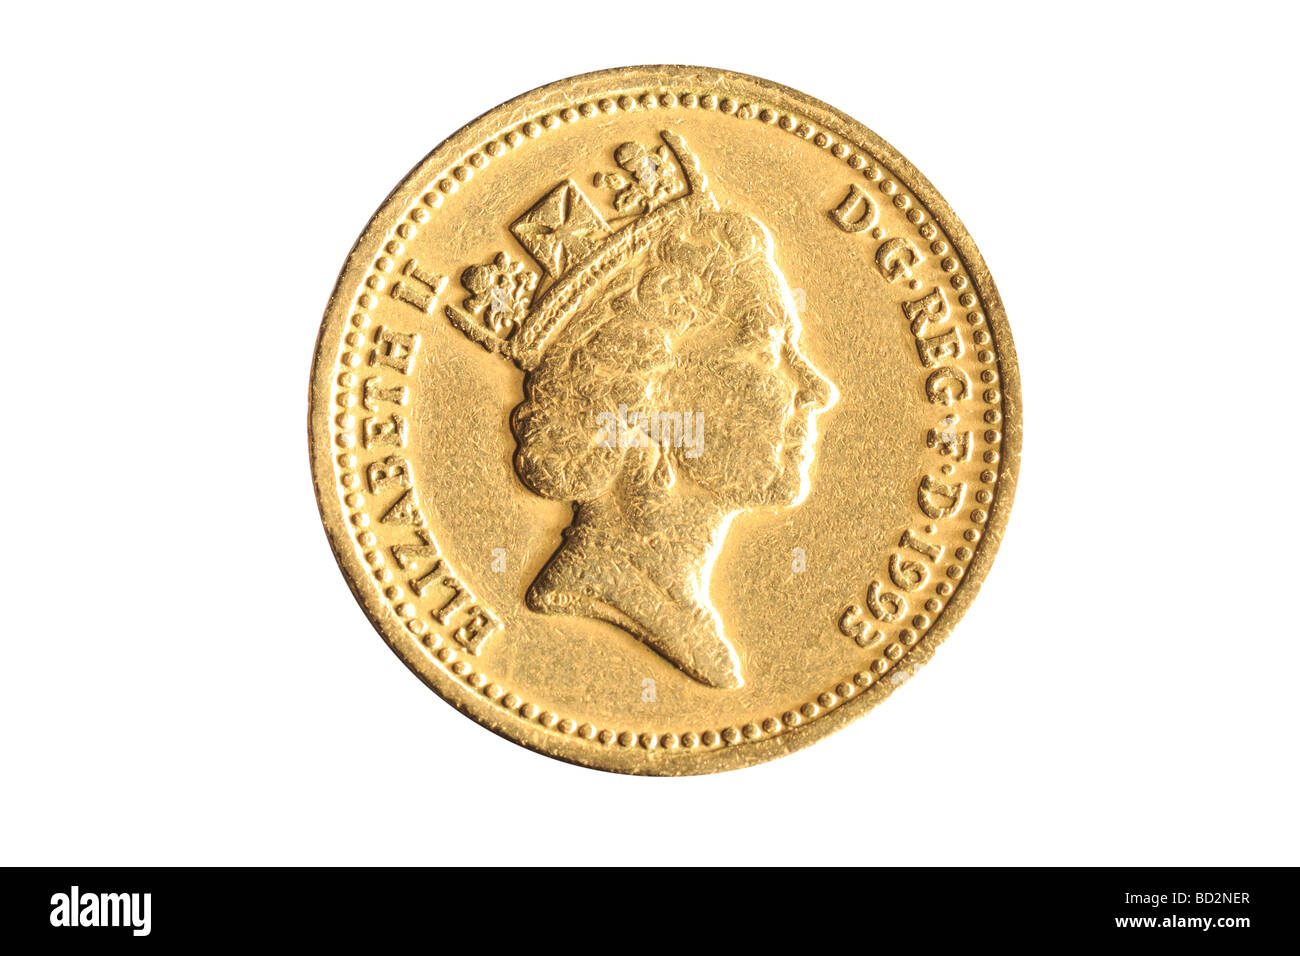 one pound coin Stock Photo